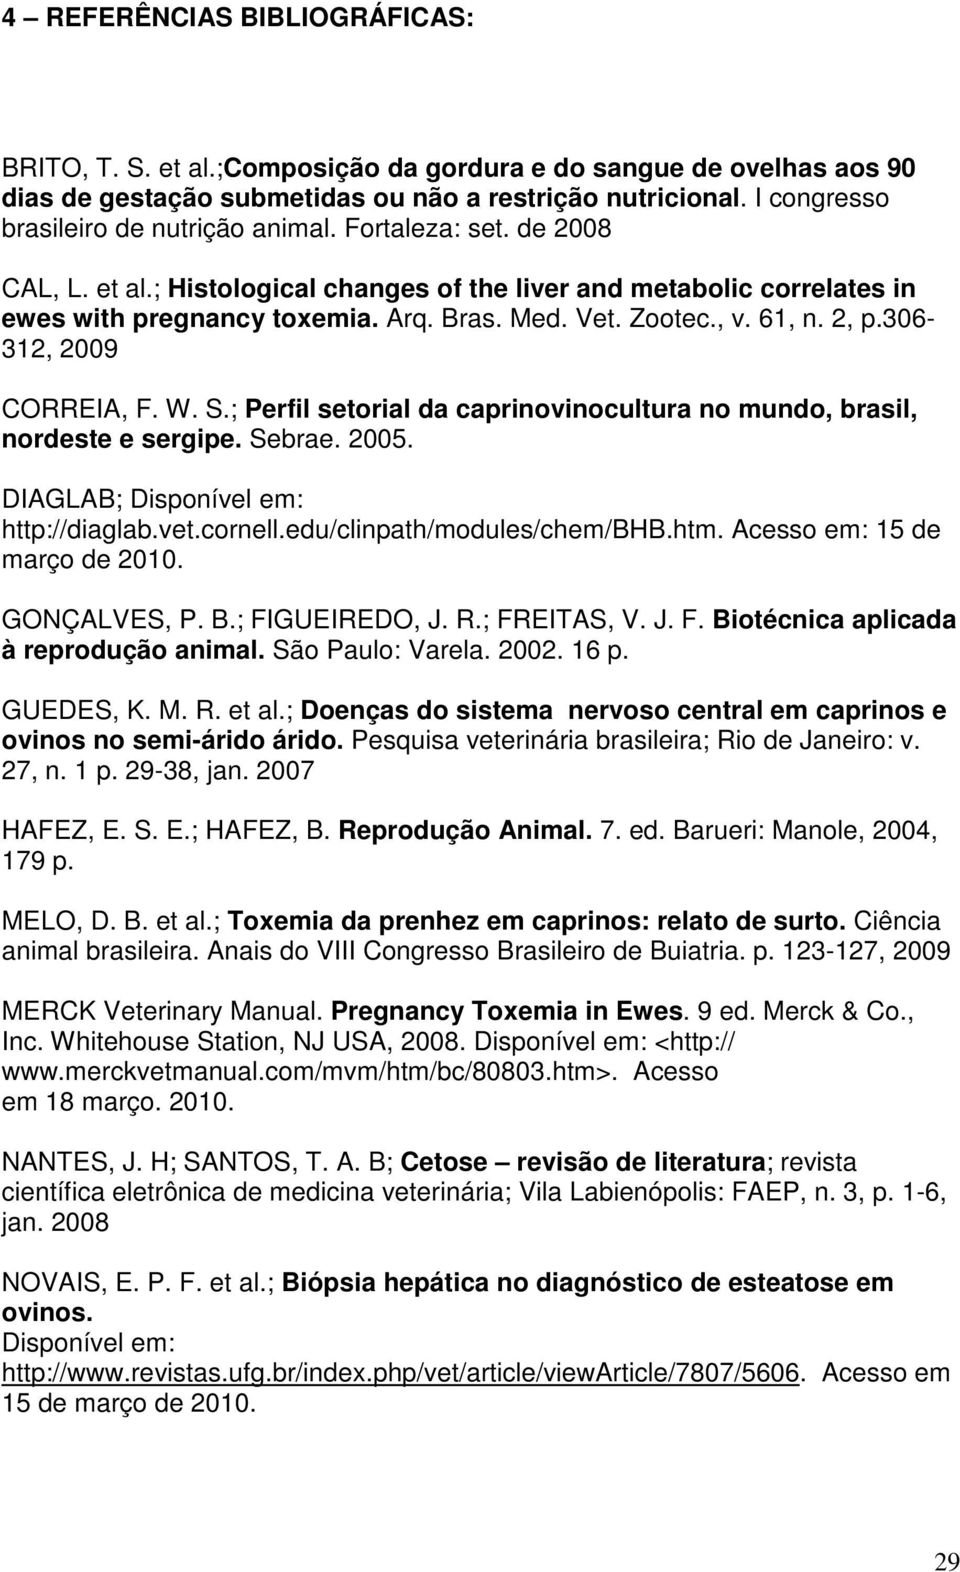 Zootec., v. 61, n. 2, p.306-312, 2009 CORREIA, F. W. S.; Perfil setorial da caprinovinocultura no mundo, brasil, nordeste e sergipe. Sebrae. 2005. DIAGLAB; Disponível em: http://diaglab.vet.cornell.